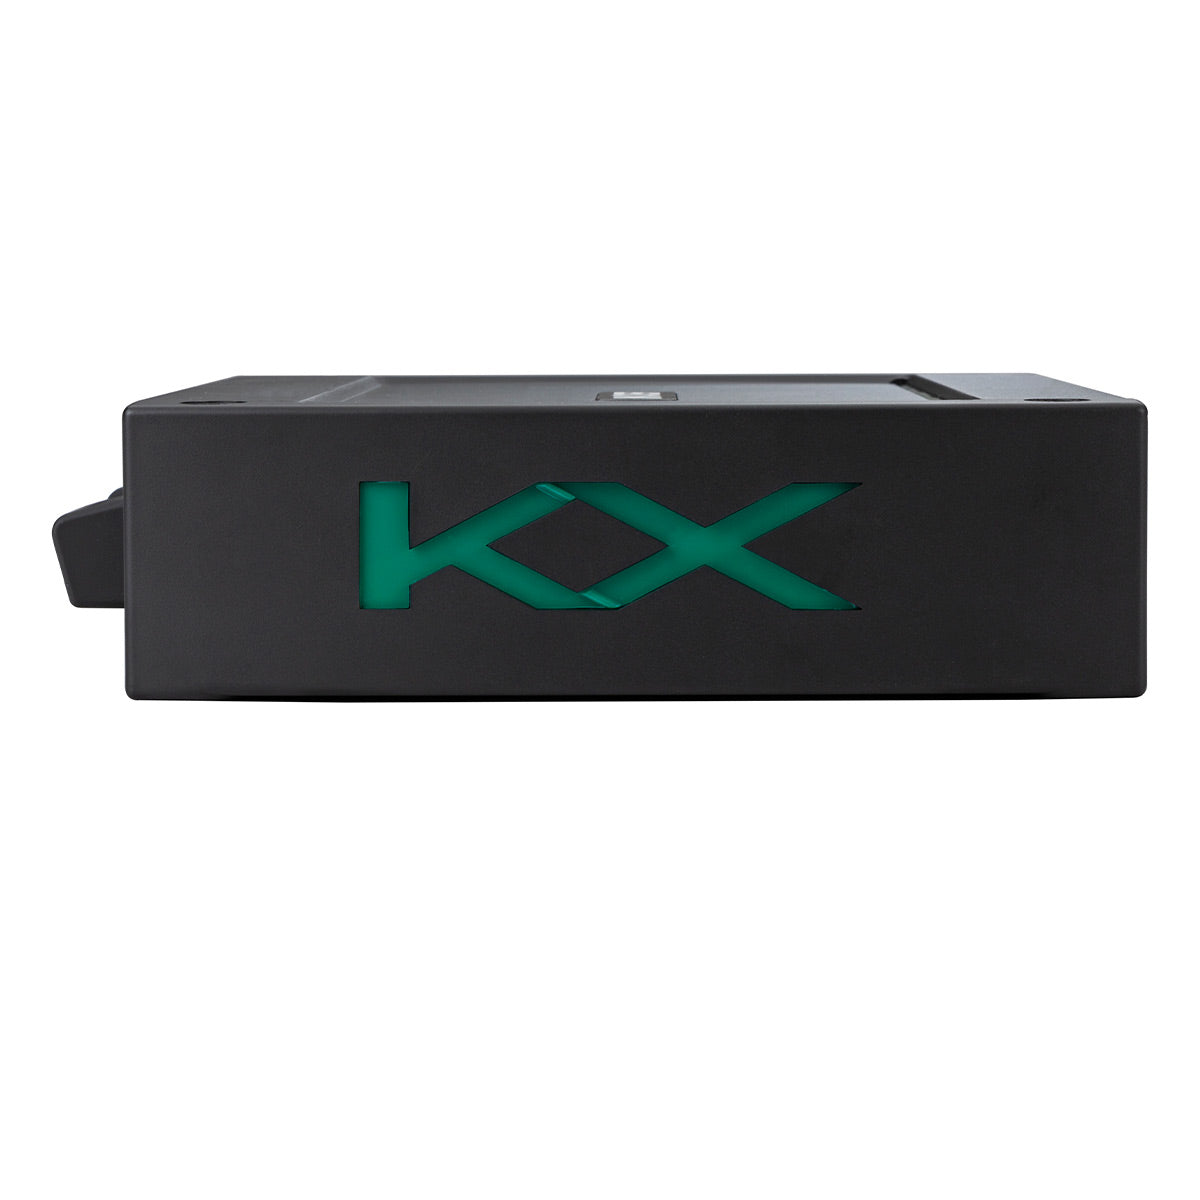 Kicker KXMA1200.2 2-channel Marine Amplifier